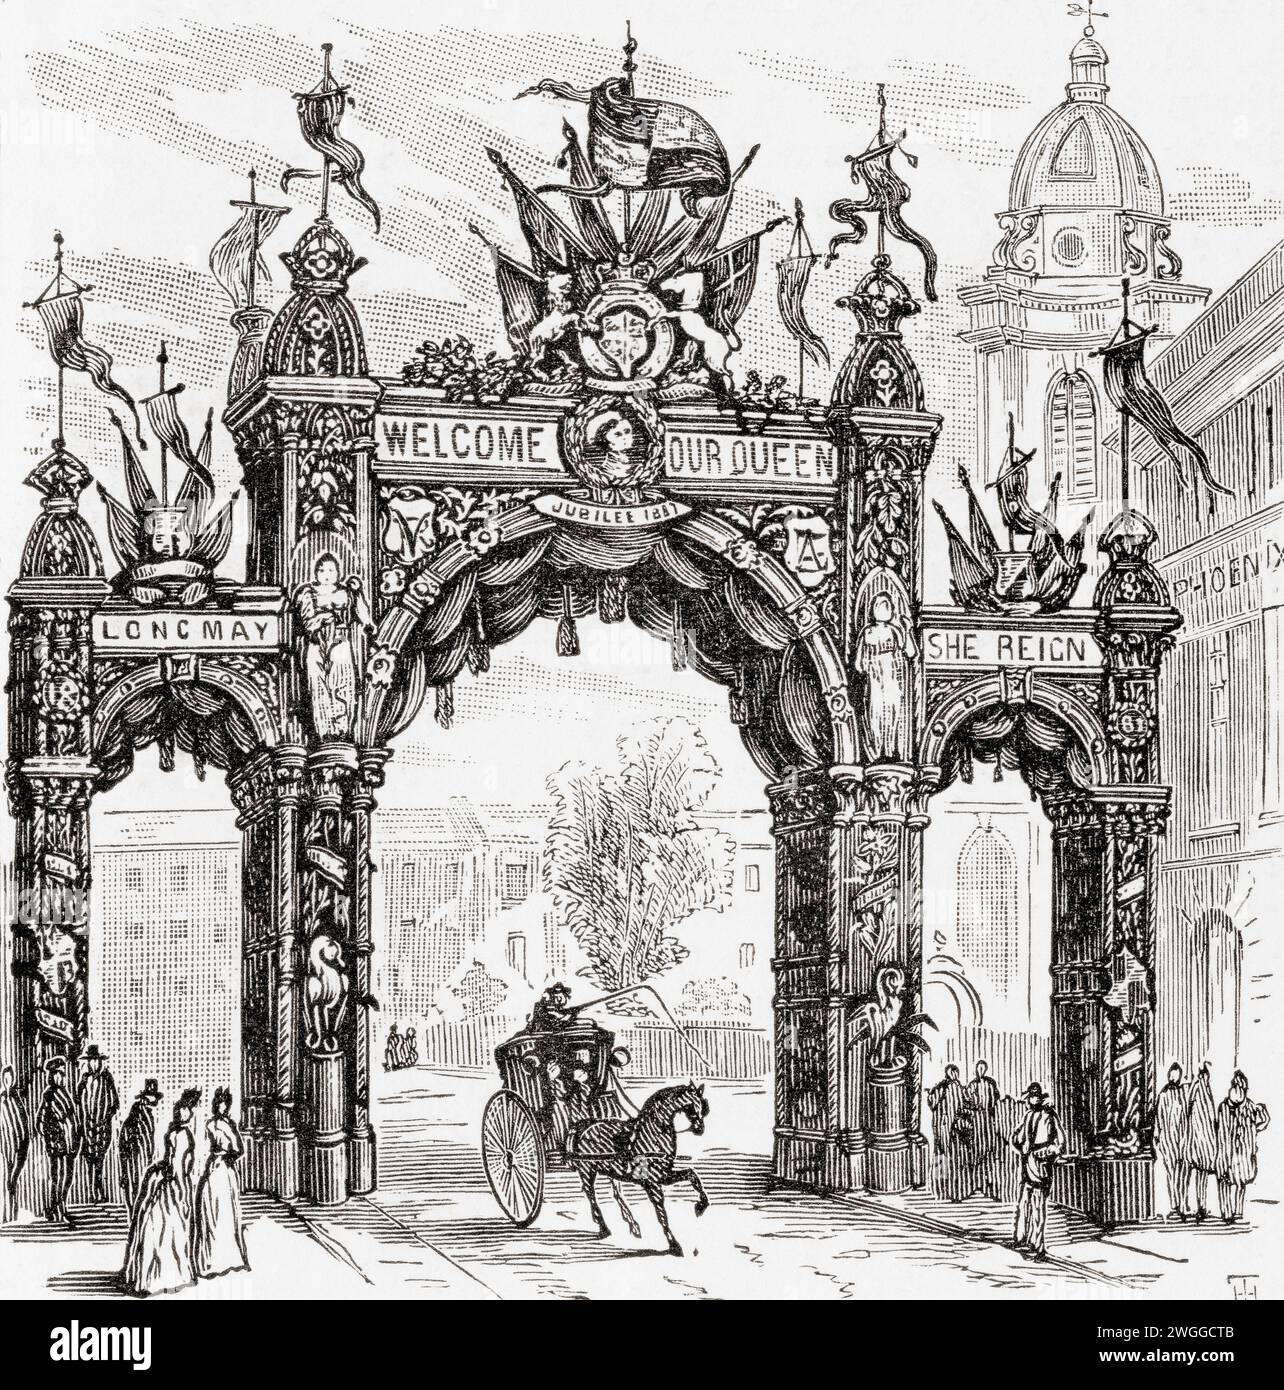 The Metal Workers' Arch sur Colmore Row, Birmingham, West Midlands, Angleterre. L'arche a été érigée à travers Colmore Row pour marquer la visite de la reine Victoria à Birmingham le 23 mars 1887, l'année du Jubilé d'Or. Tiré du London Illustrated News, publié le 26 mars 1887. Banque D'Images